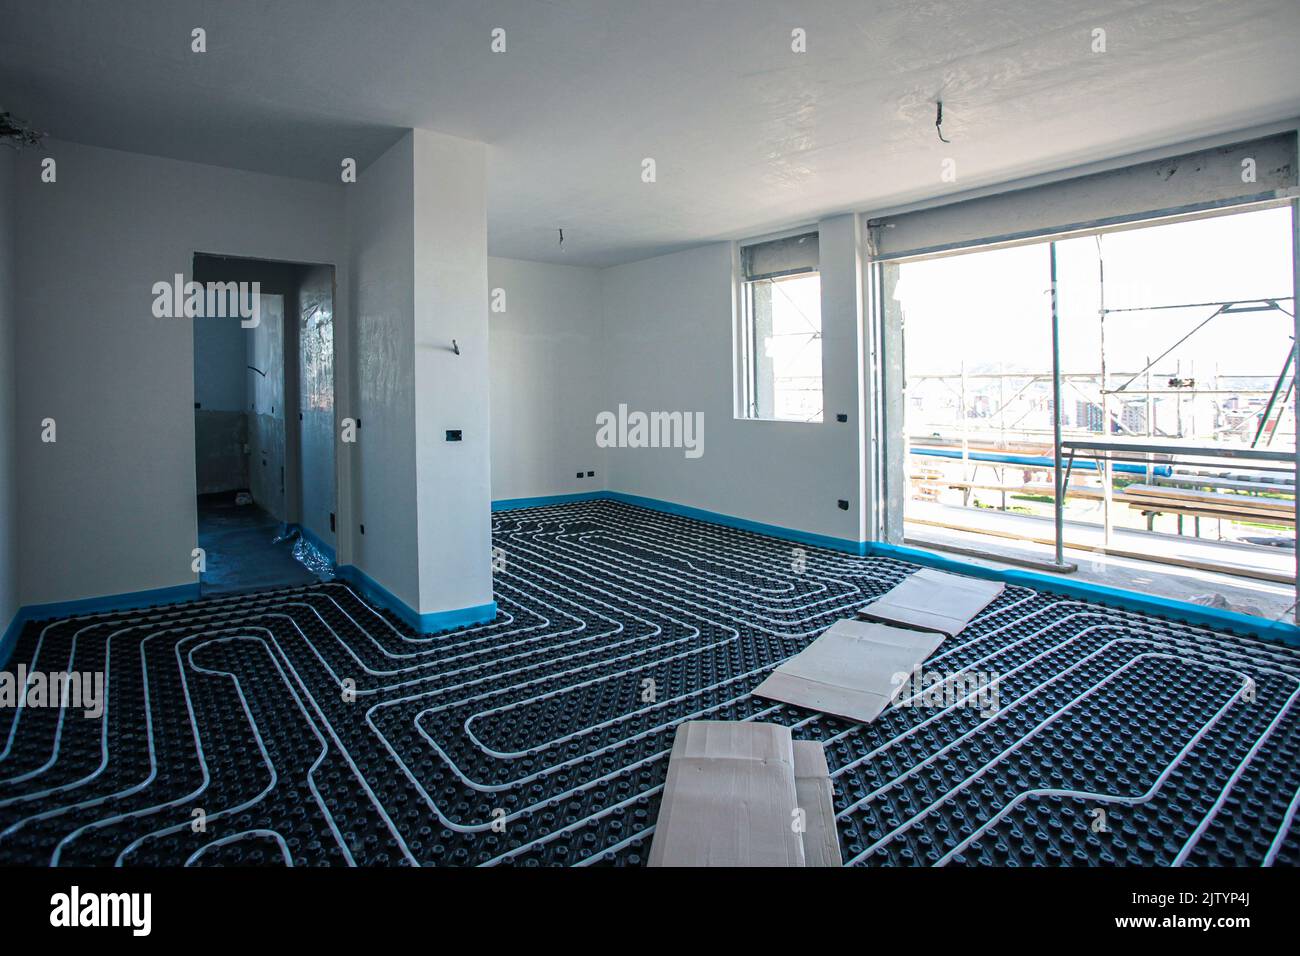 Fußbodenheizung. Fußbodenheizung in einem modernen Gebäude im Bau. Stockfoto